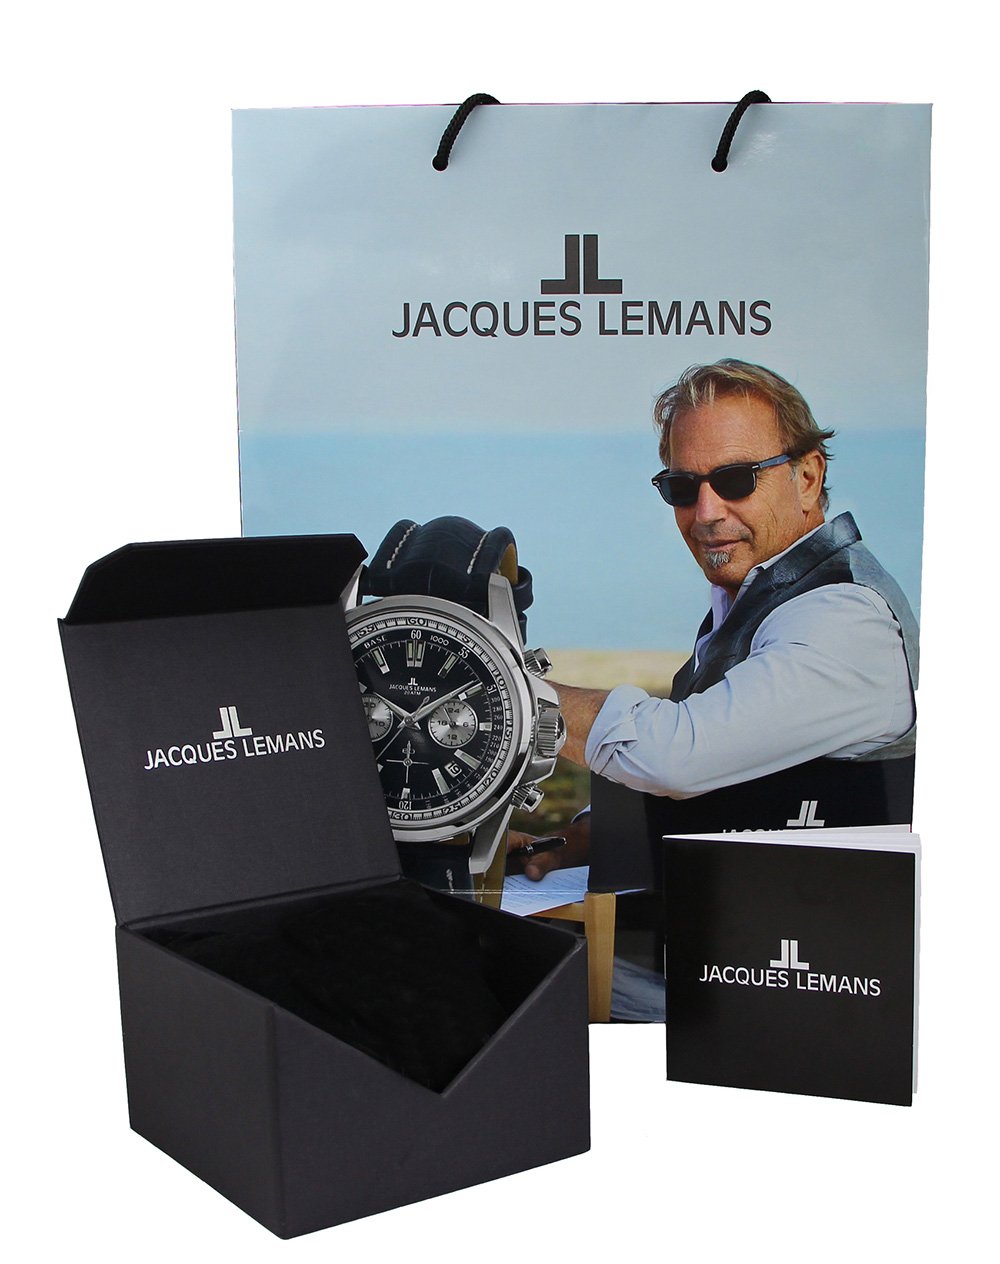 Фото часов Женские часы Jacques Lemans Classic 1-2027C